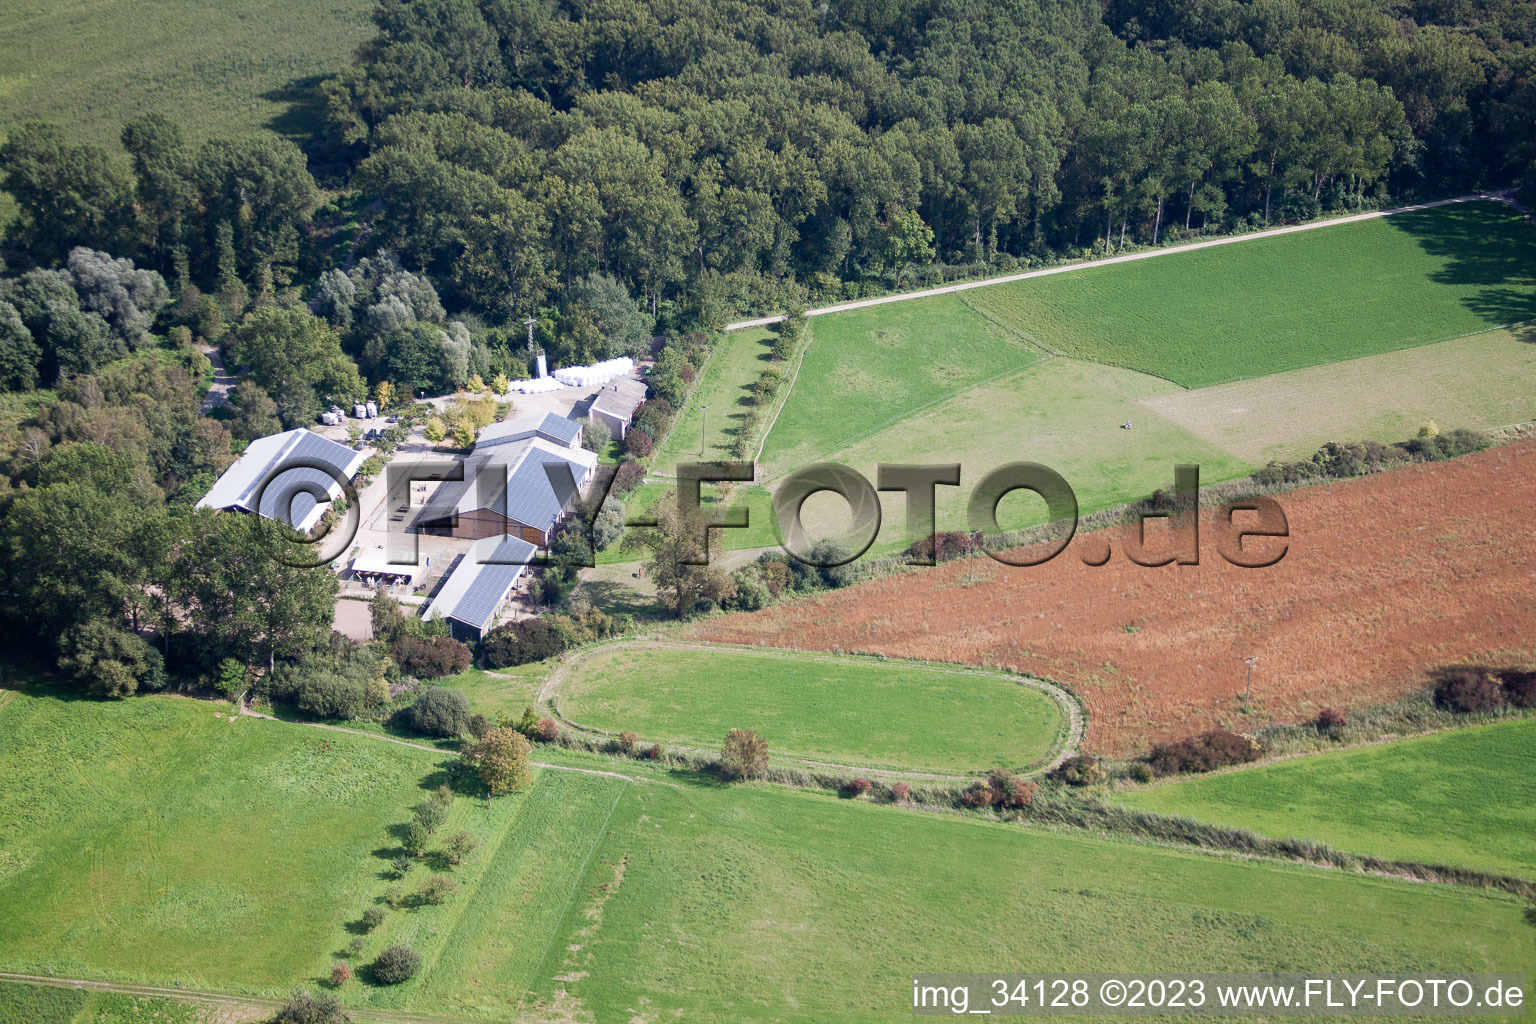 Kennelhof à le quartier Sondernheim in Germersheim dans le département Rhénanie-Palatinat, Allemagne vue d'en haut